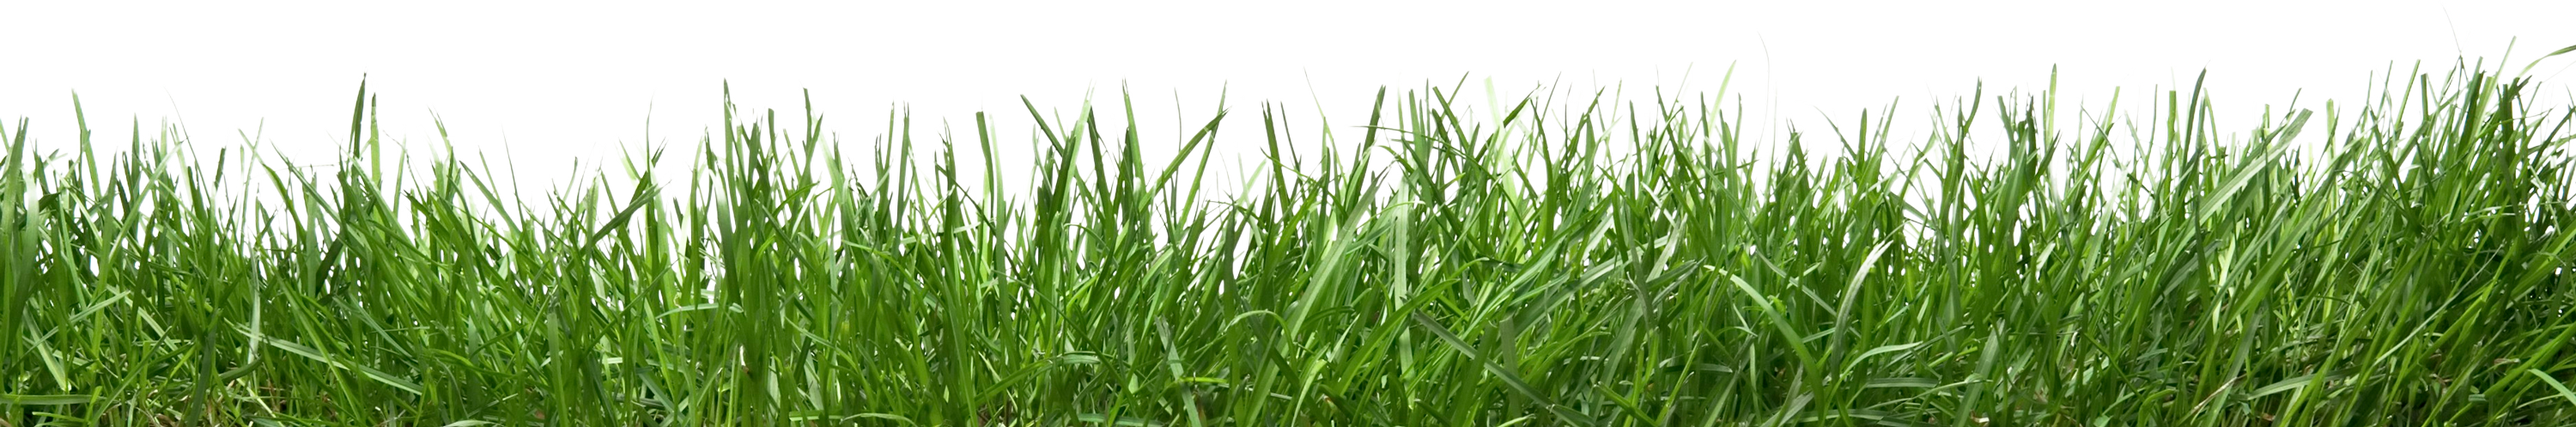 grass_bottom